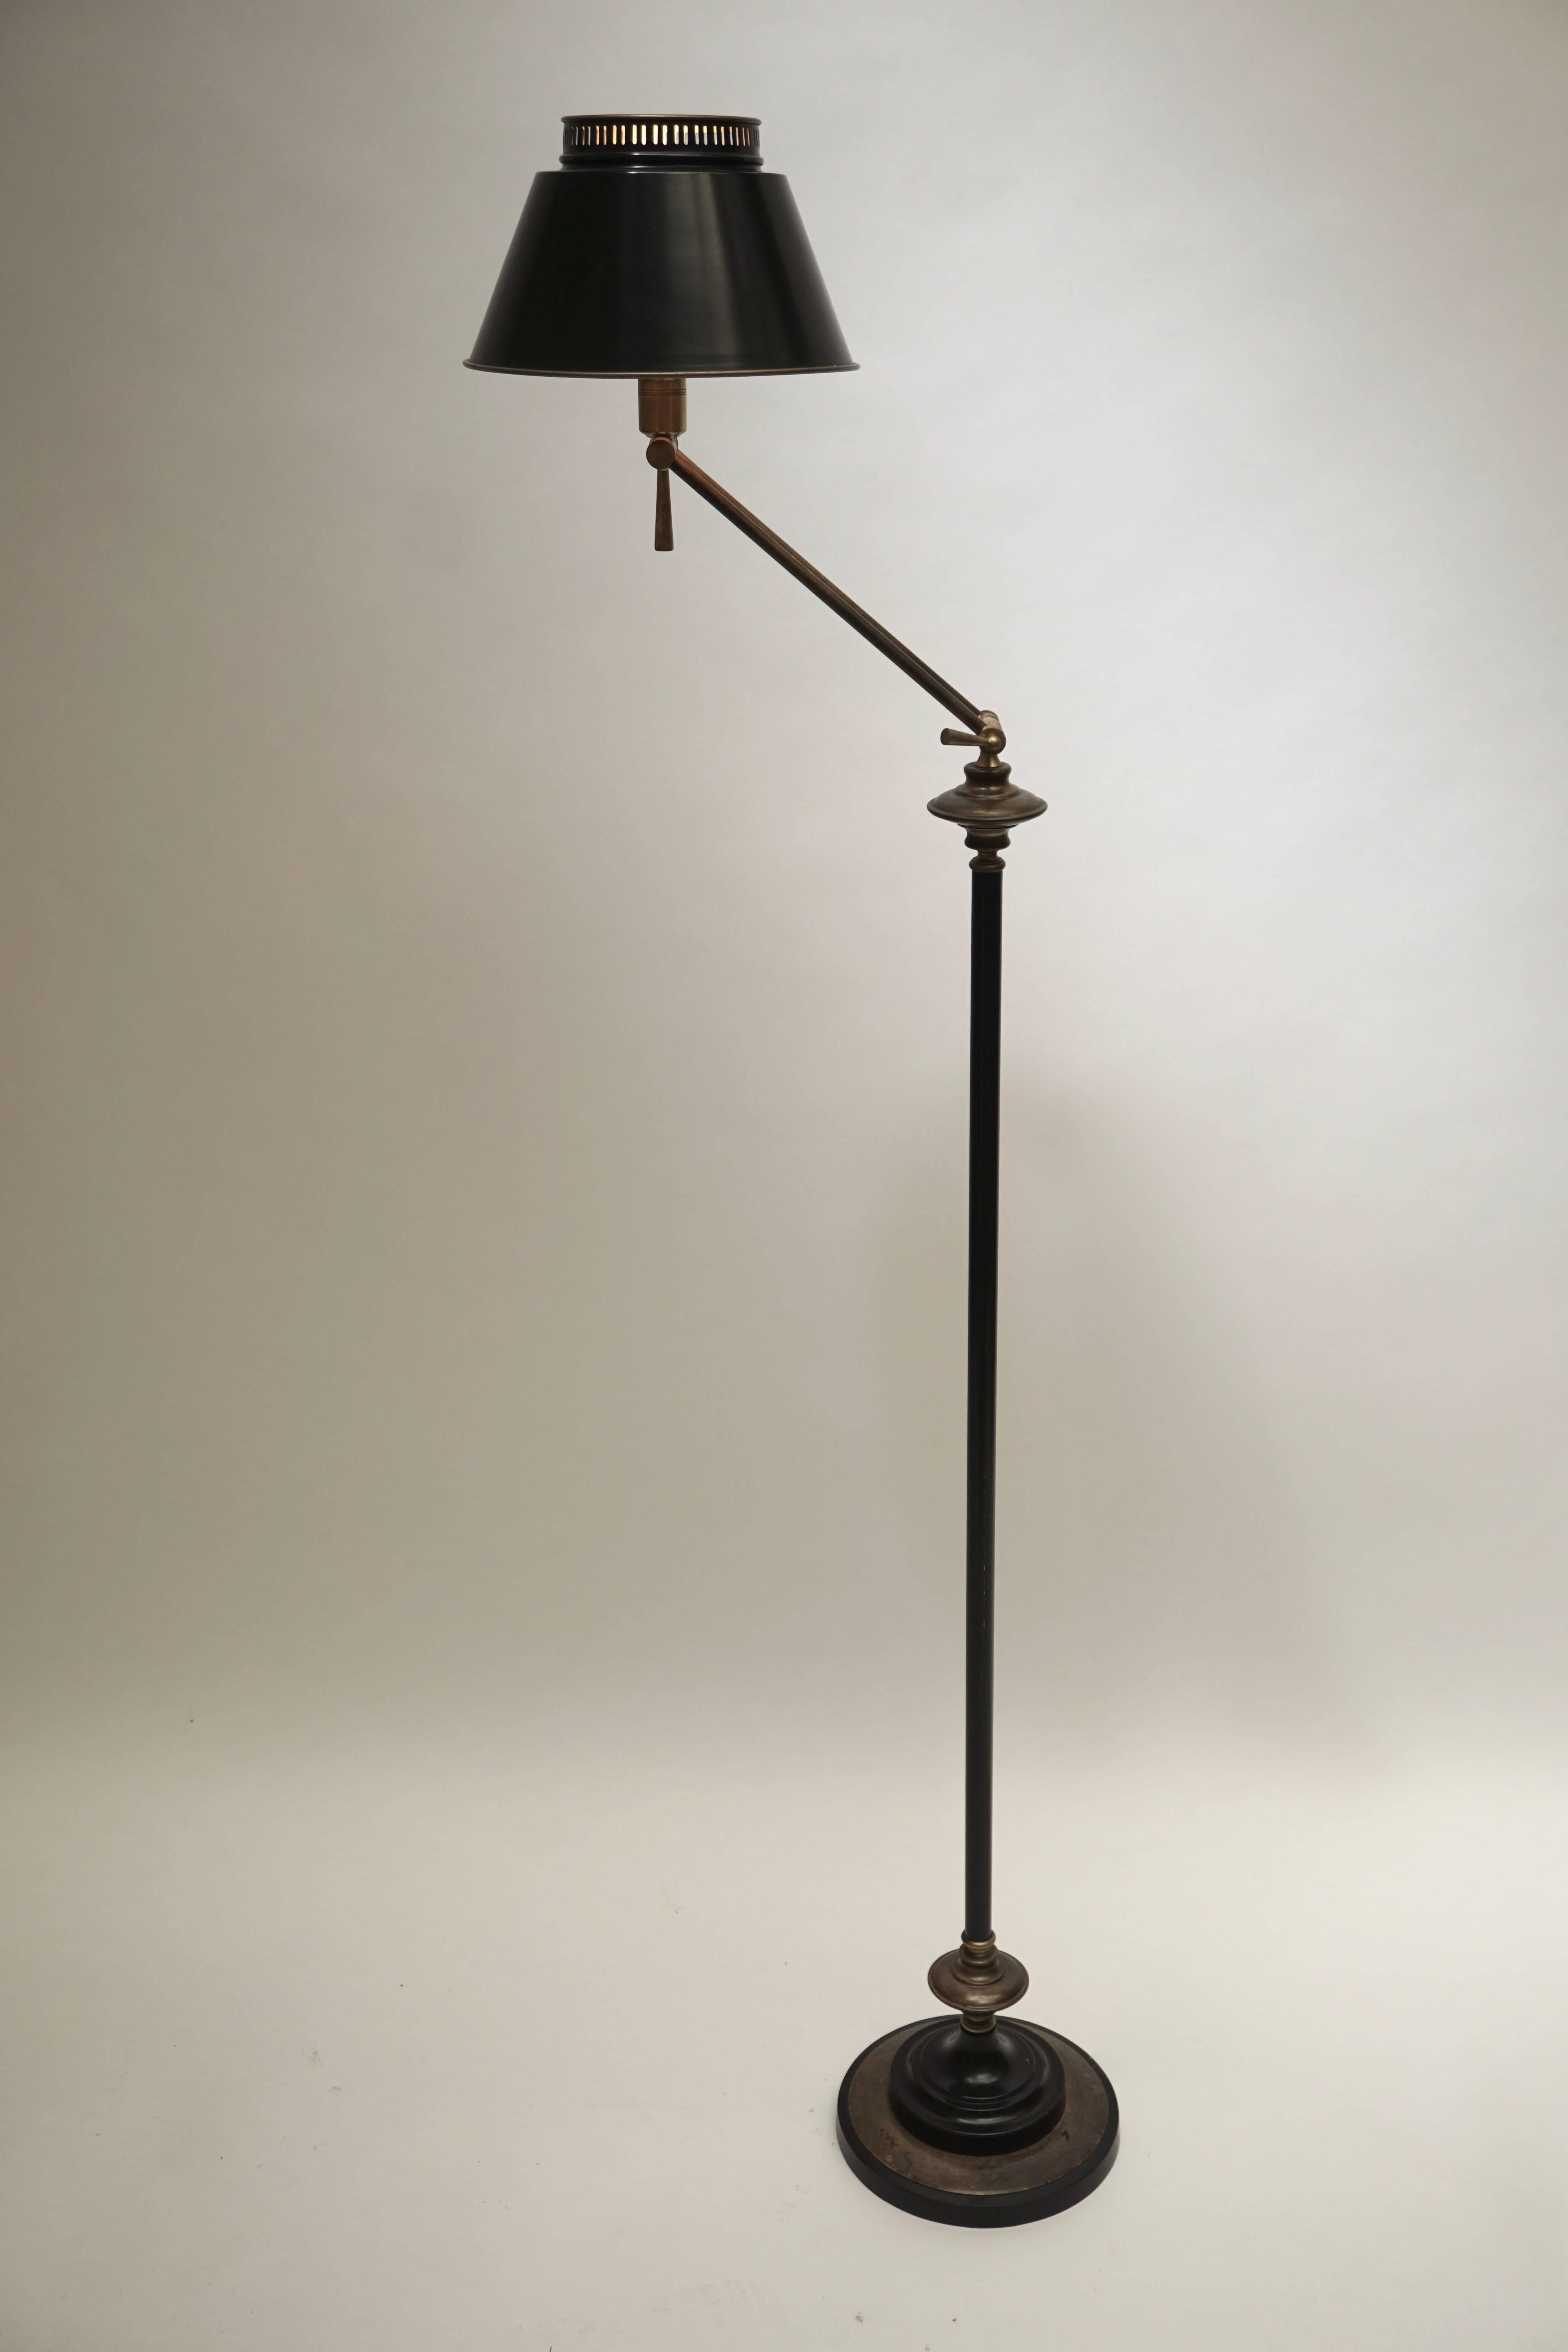 Brass and metal adjustable floor lamp.
Diameter shade: 26 cm.
Diameter base: 24 cm.
Maximum height: 180 cm.
Minimum height: 140 cm.